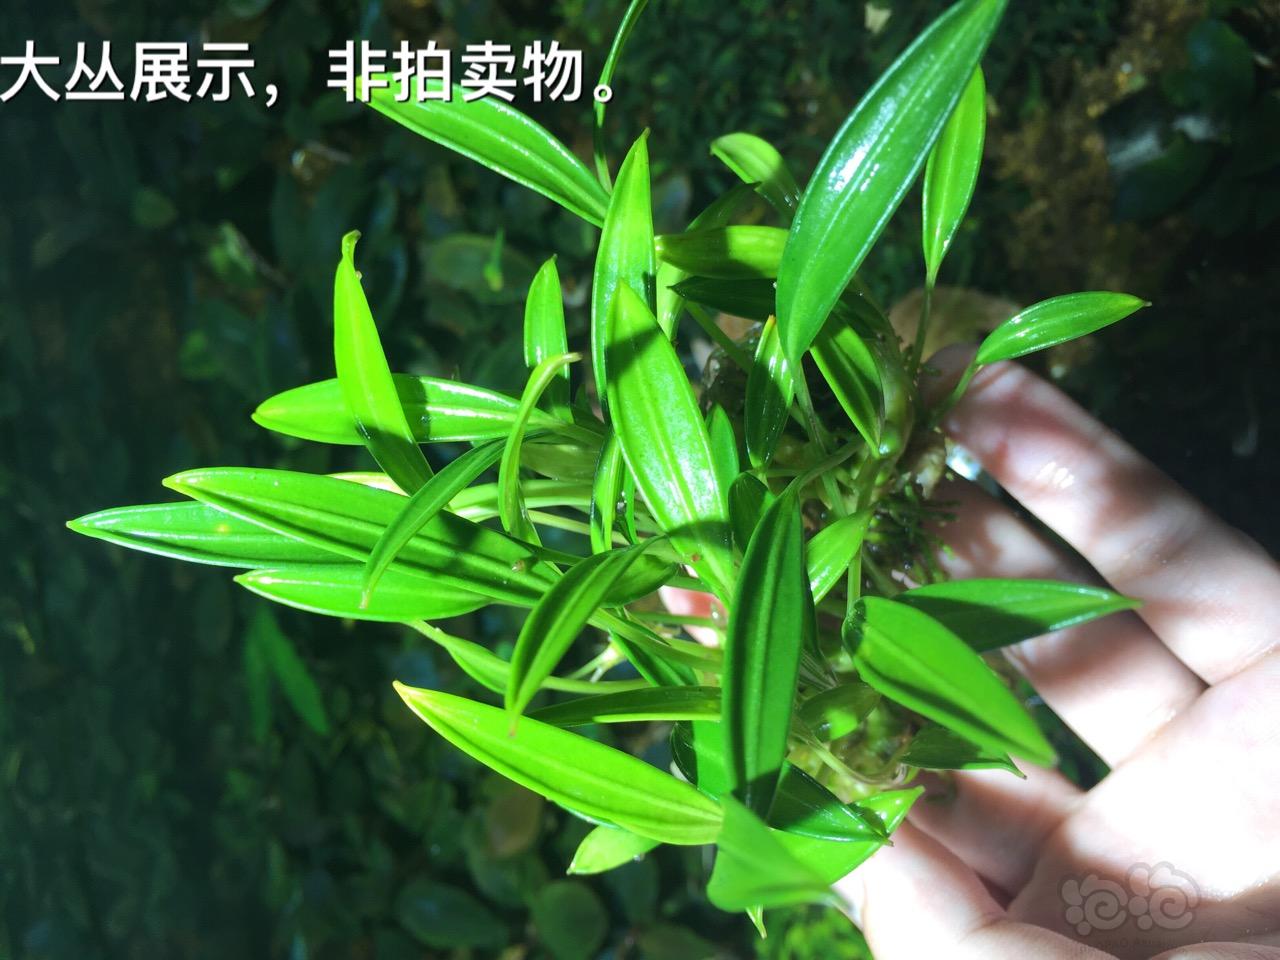 【用品】2016-07-15#RMB拍卖岩榕一颗-图3